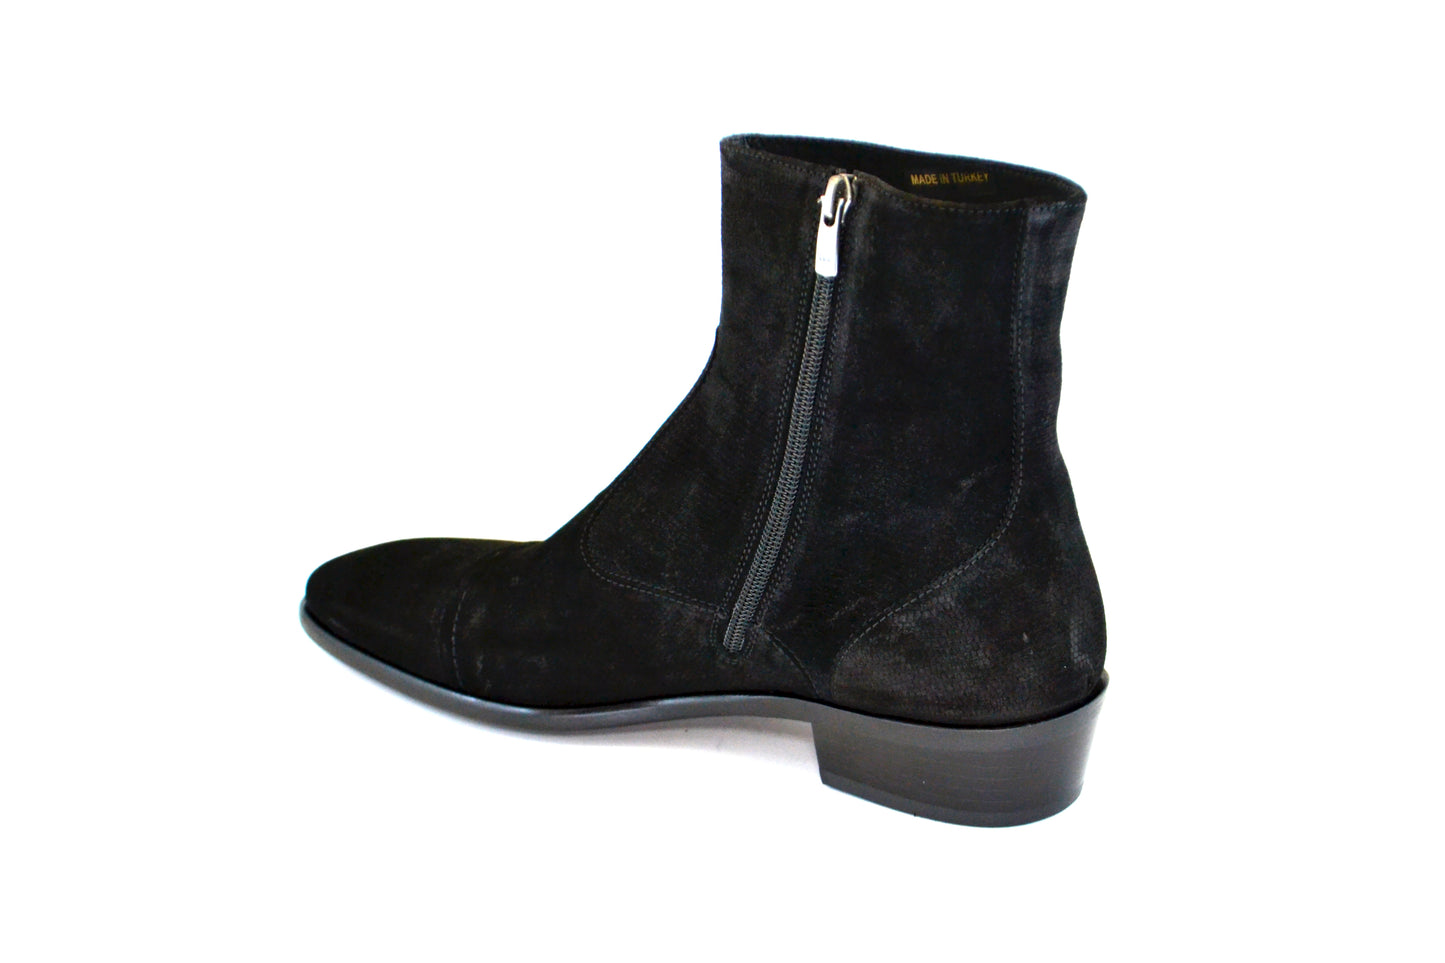 C191-1547 Cap toe side zipper boot- lizard Black Suede